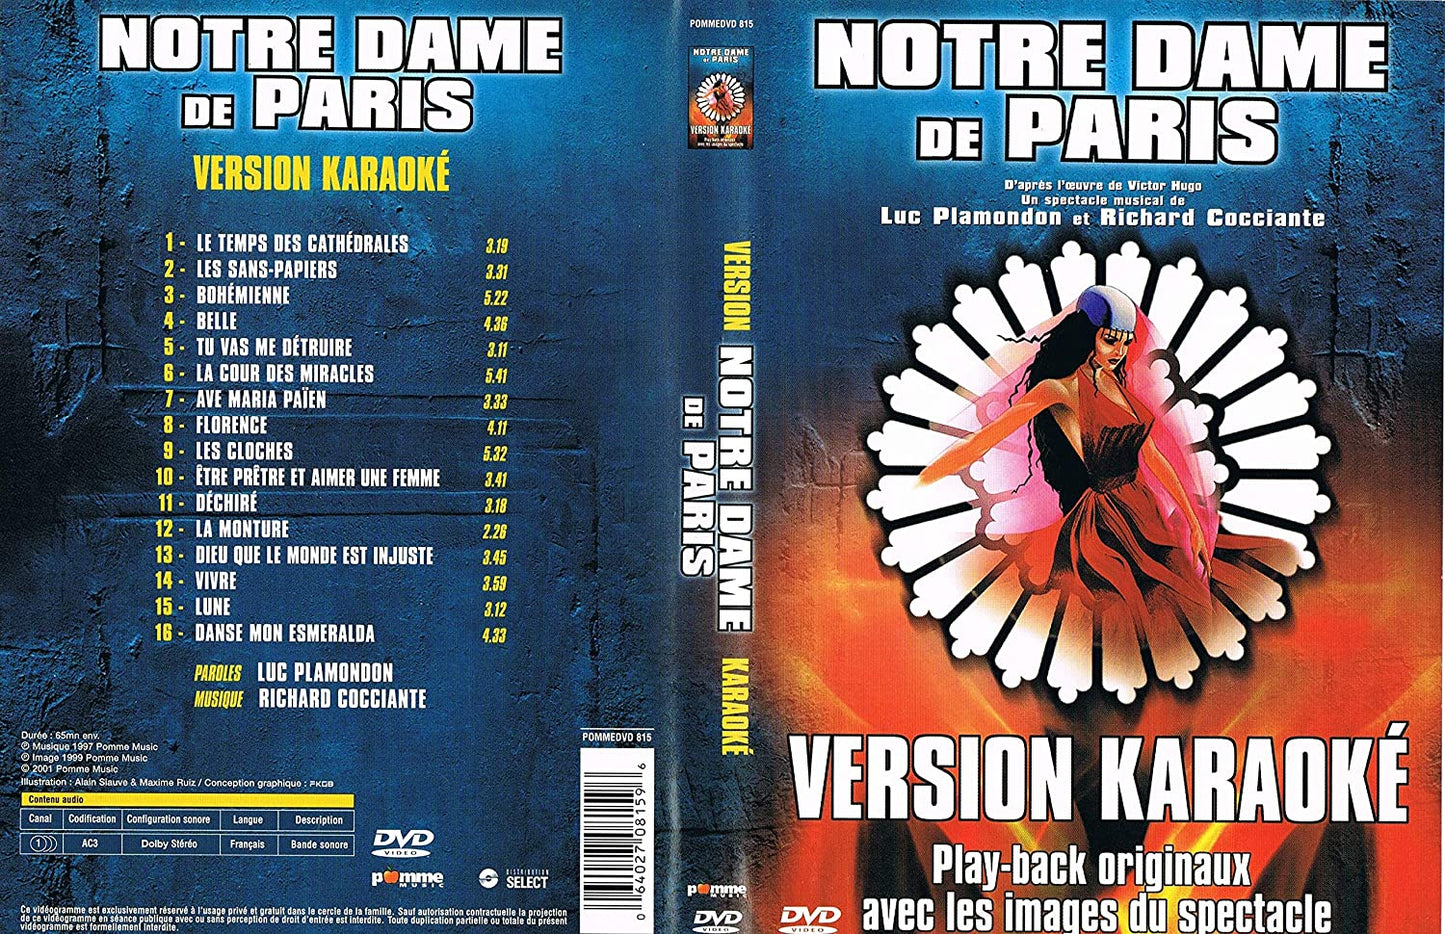 Notre Dame De Paris - Version Karaoke DVD (Play-Back Originaux Avec Les Images Du Spectacle / Edition Canada) [DVD]